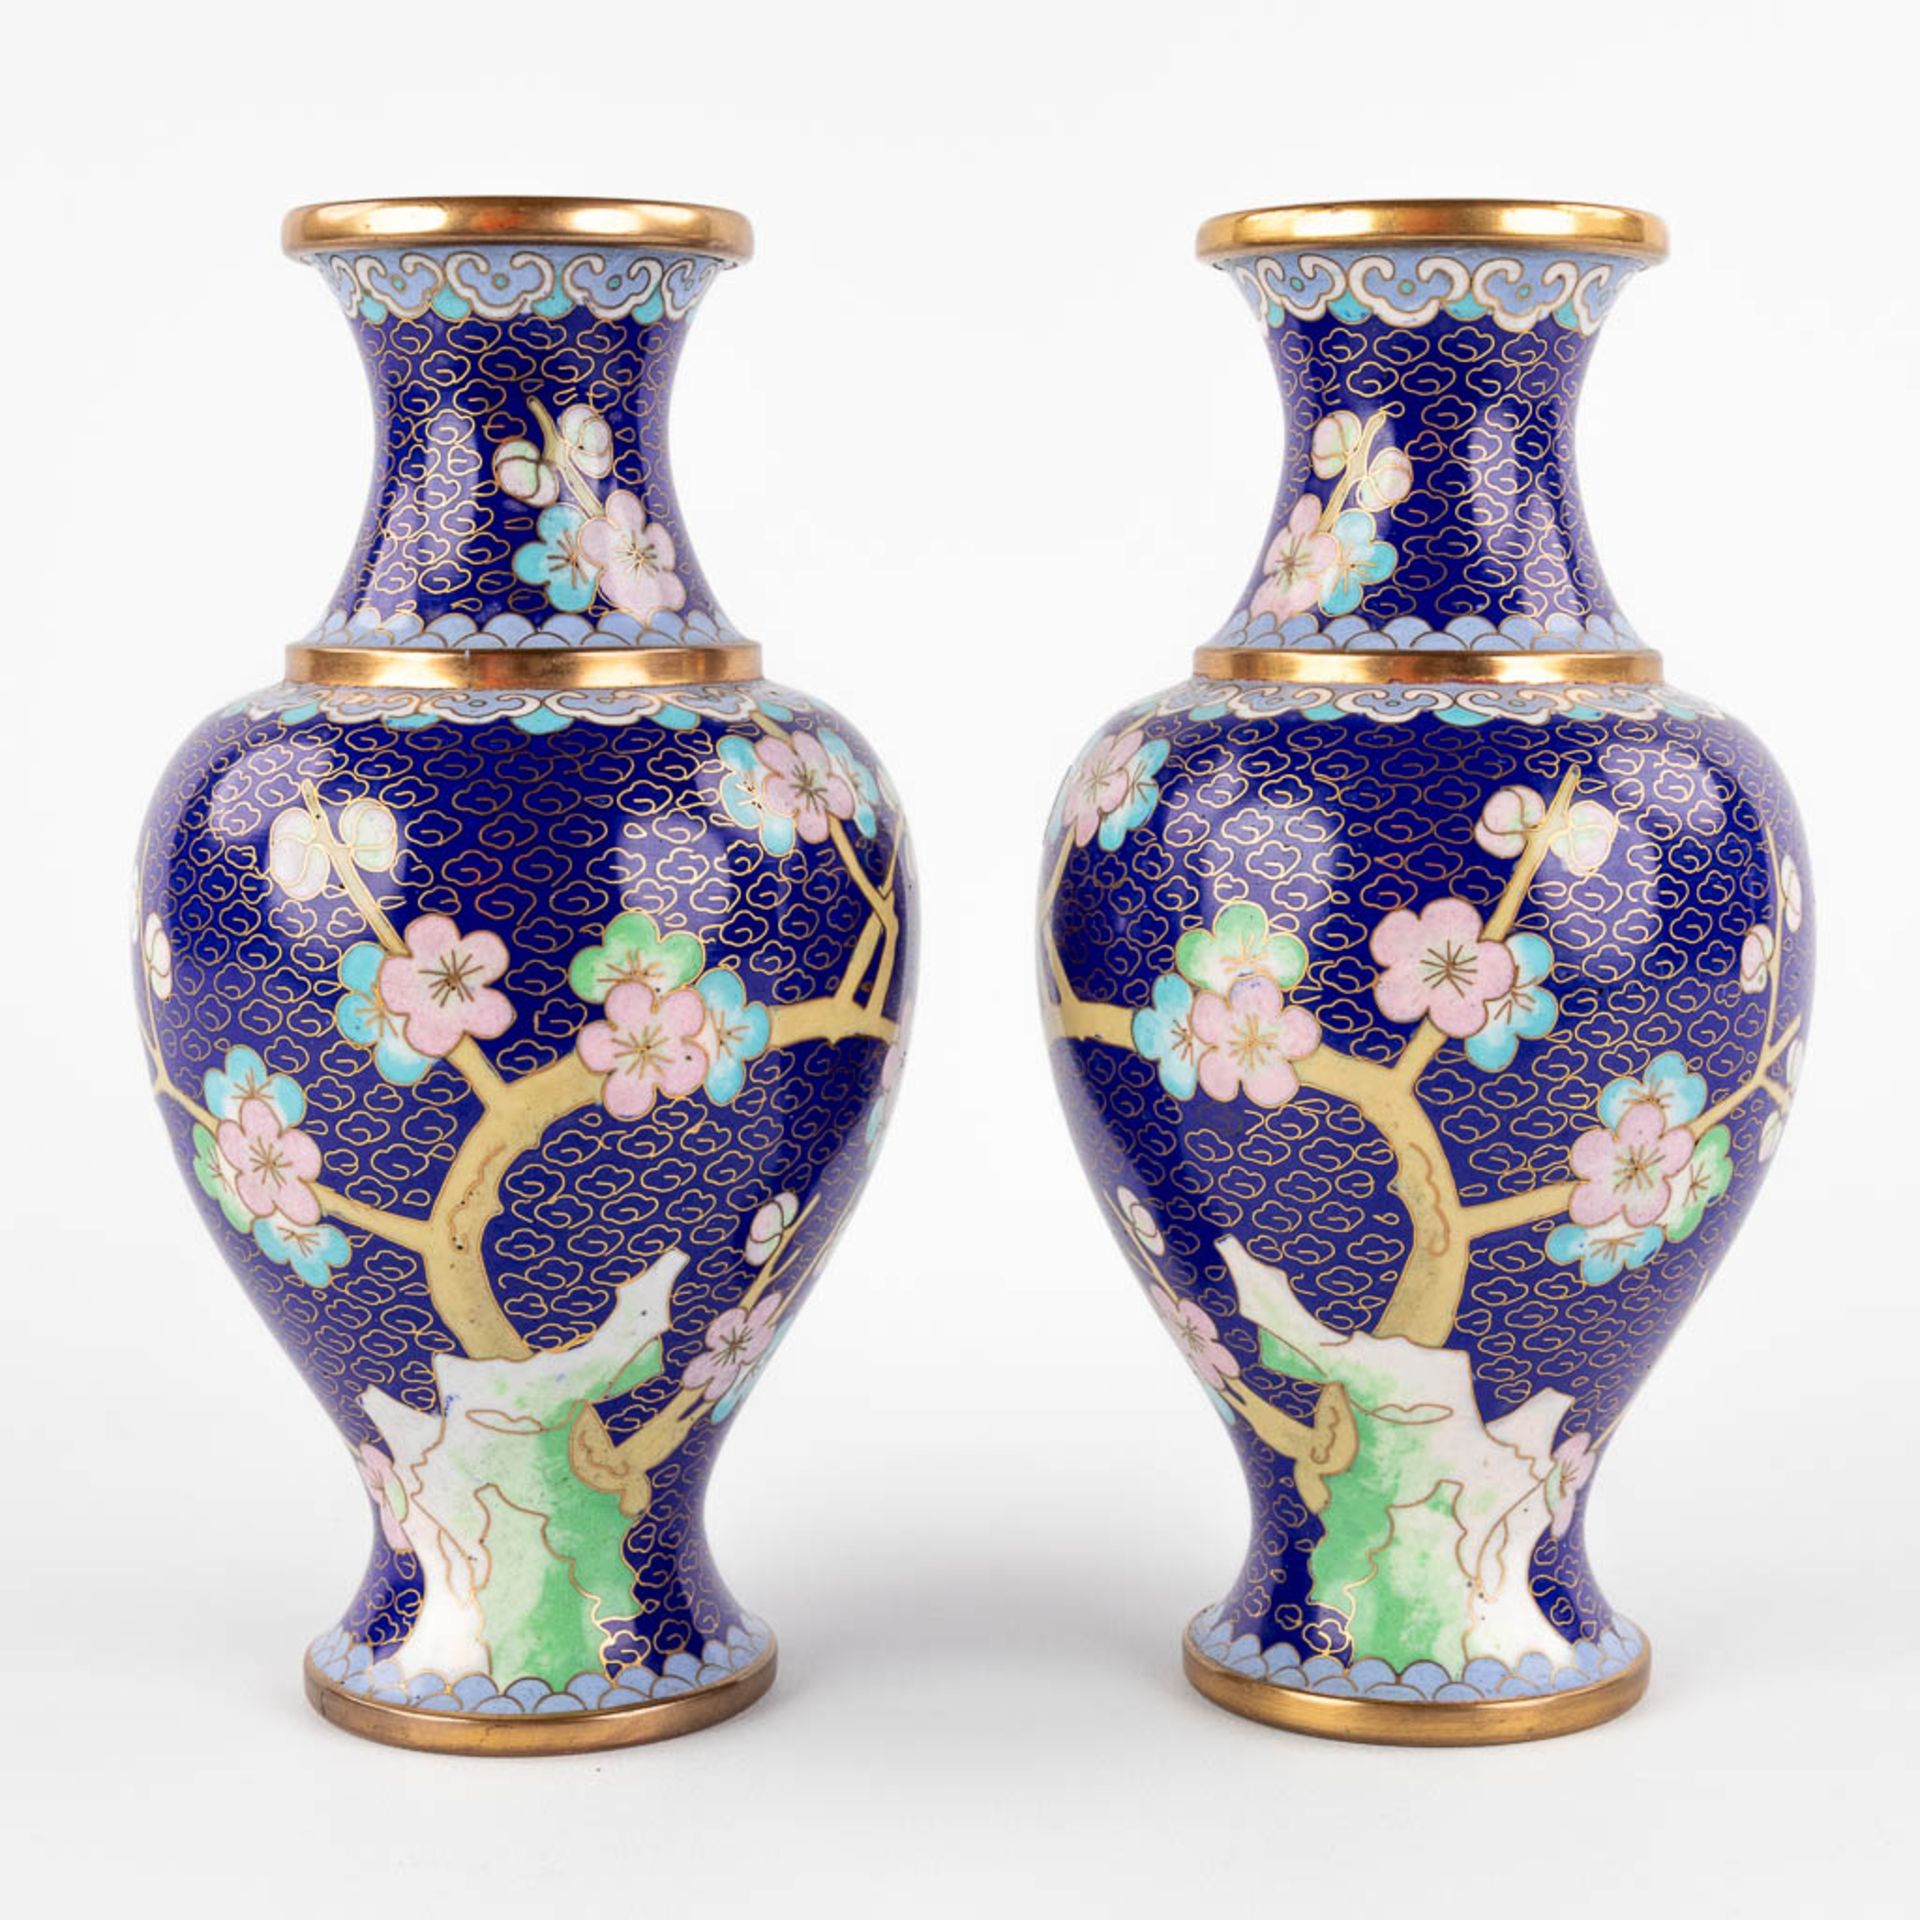 Five Oriental vases, cloisonné bronze. 20th C. (H:25 cm) - Image 11 of 27